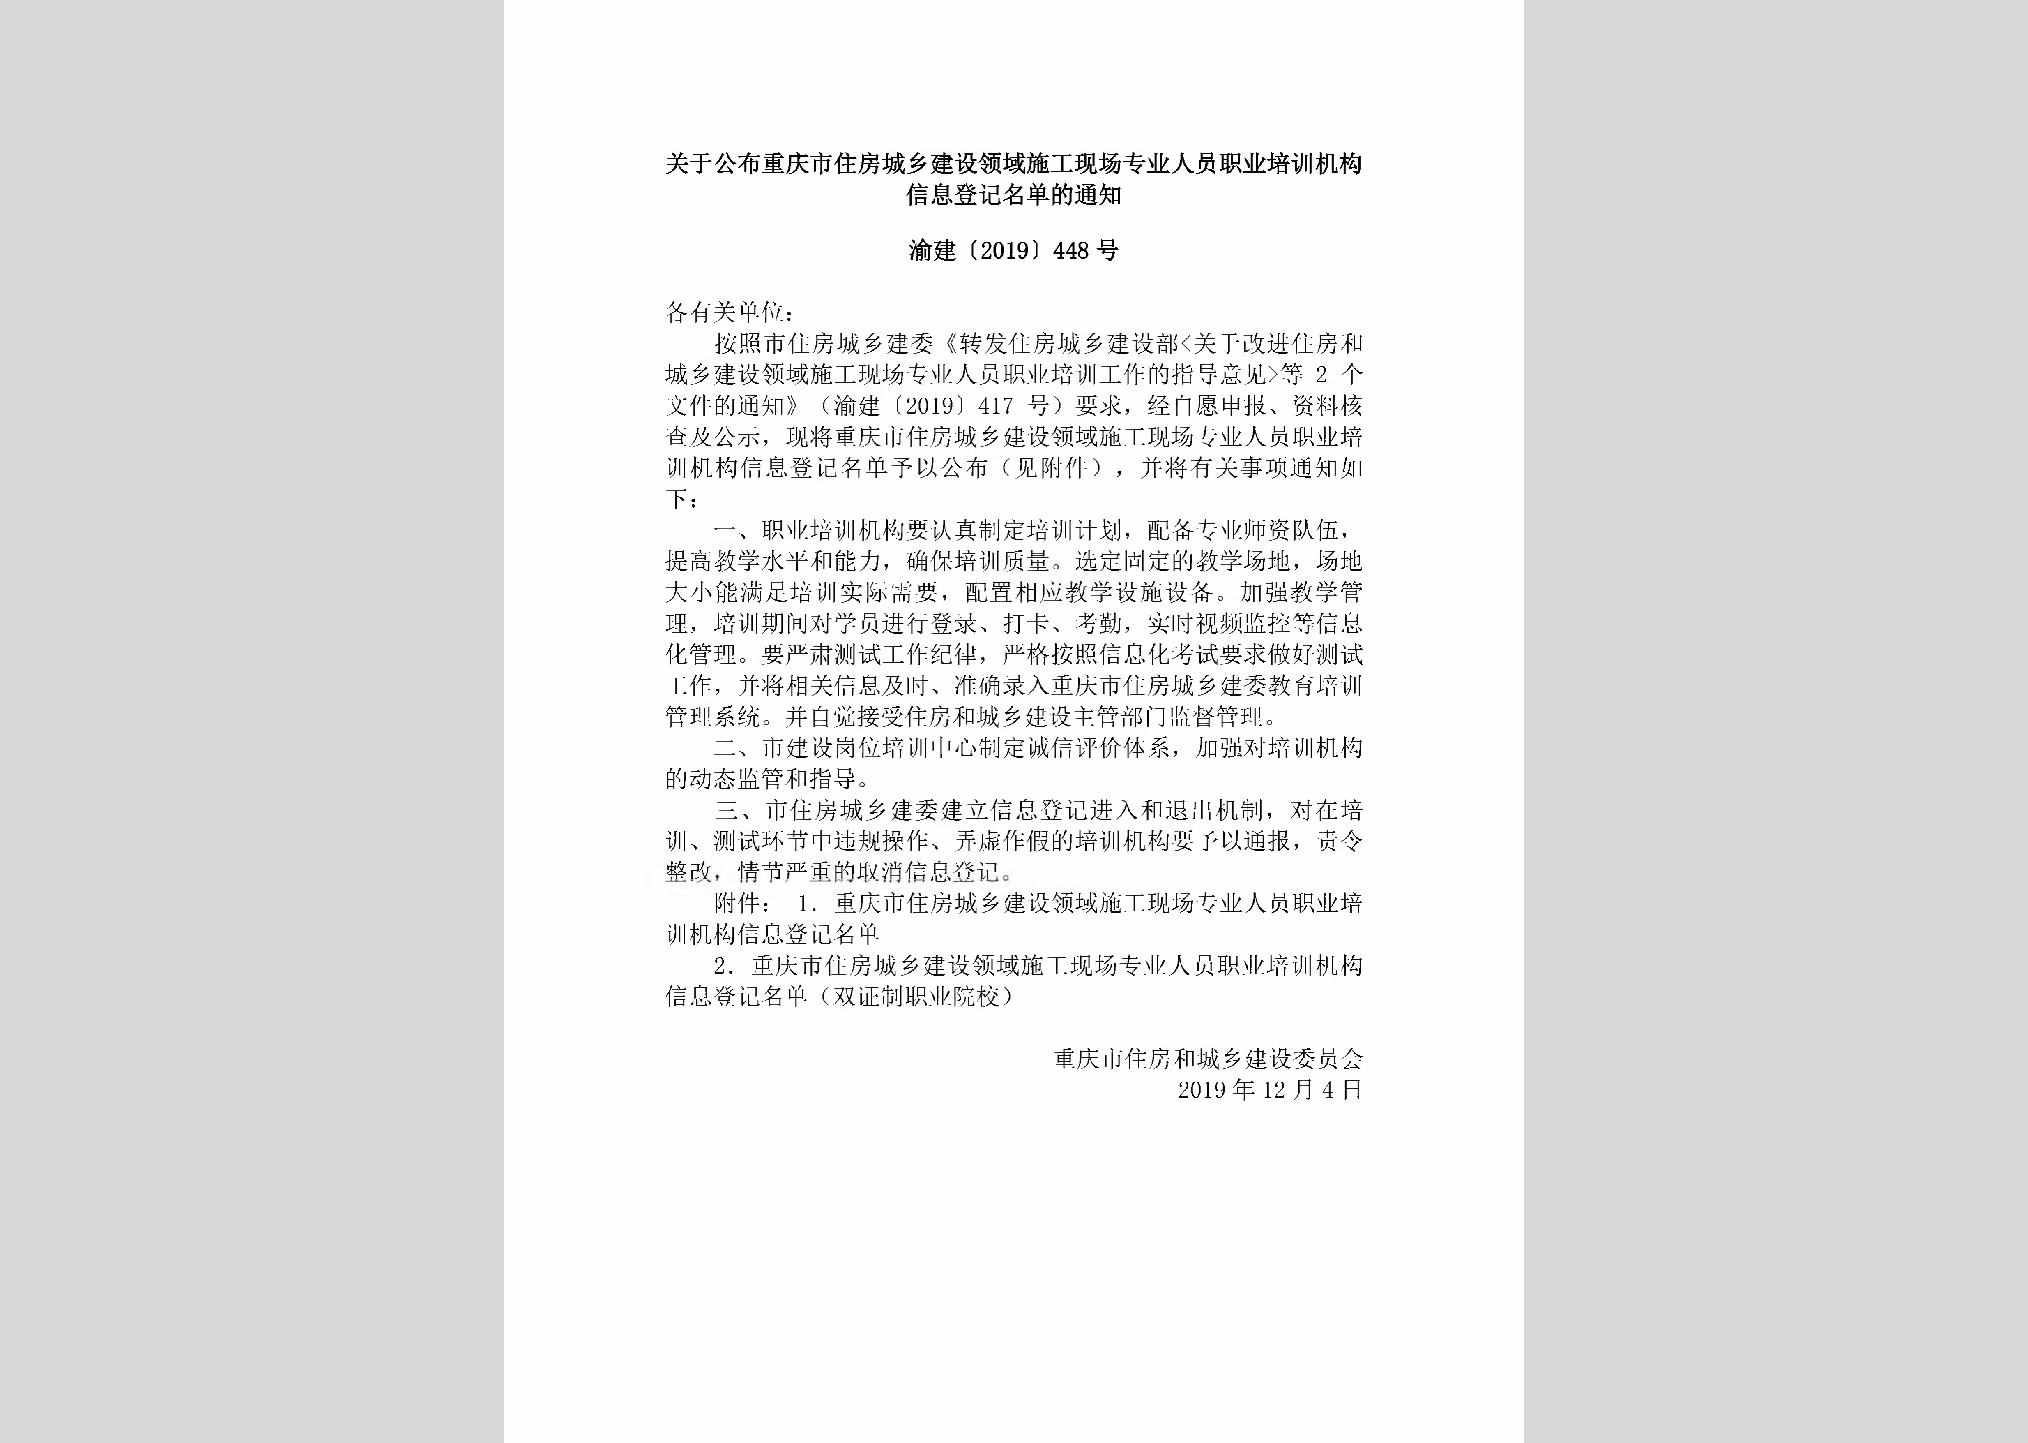 渝建[2019]448号：关于公布重庆市住房城乡建设领域施工现场专业人员职业培训机构信息登记名单的通知